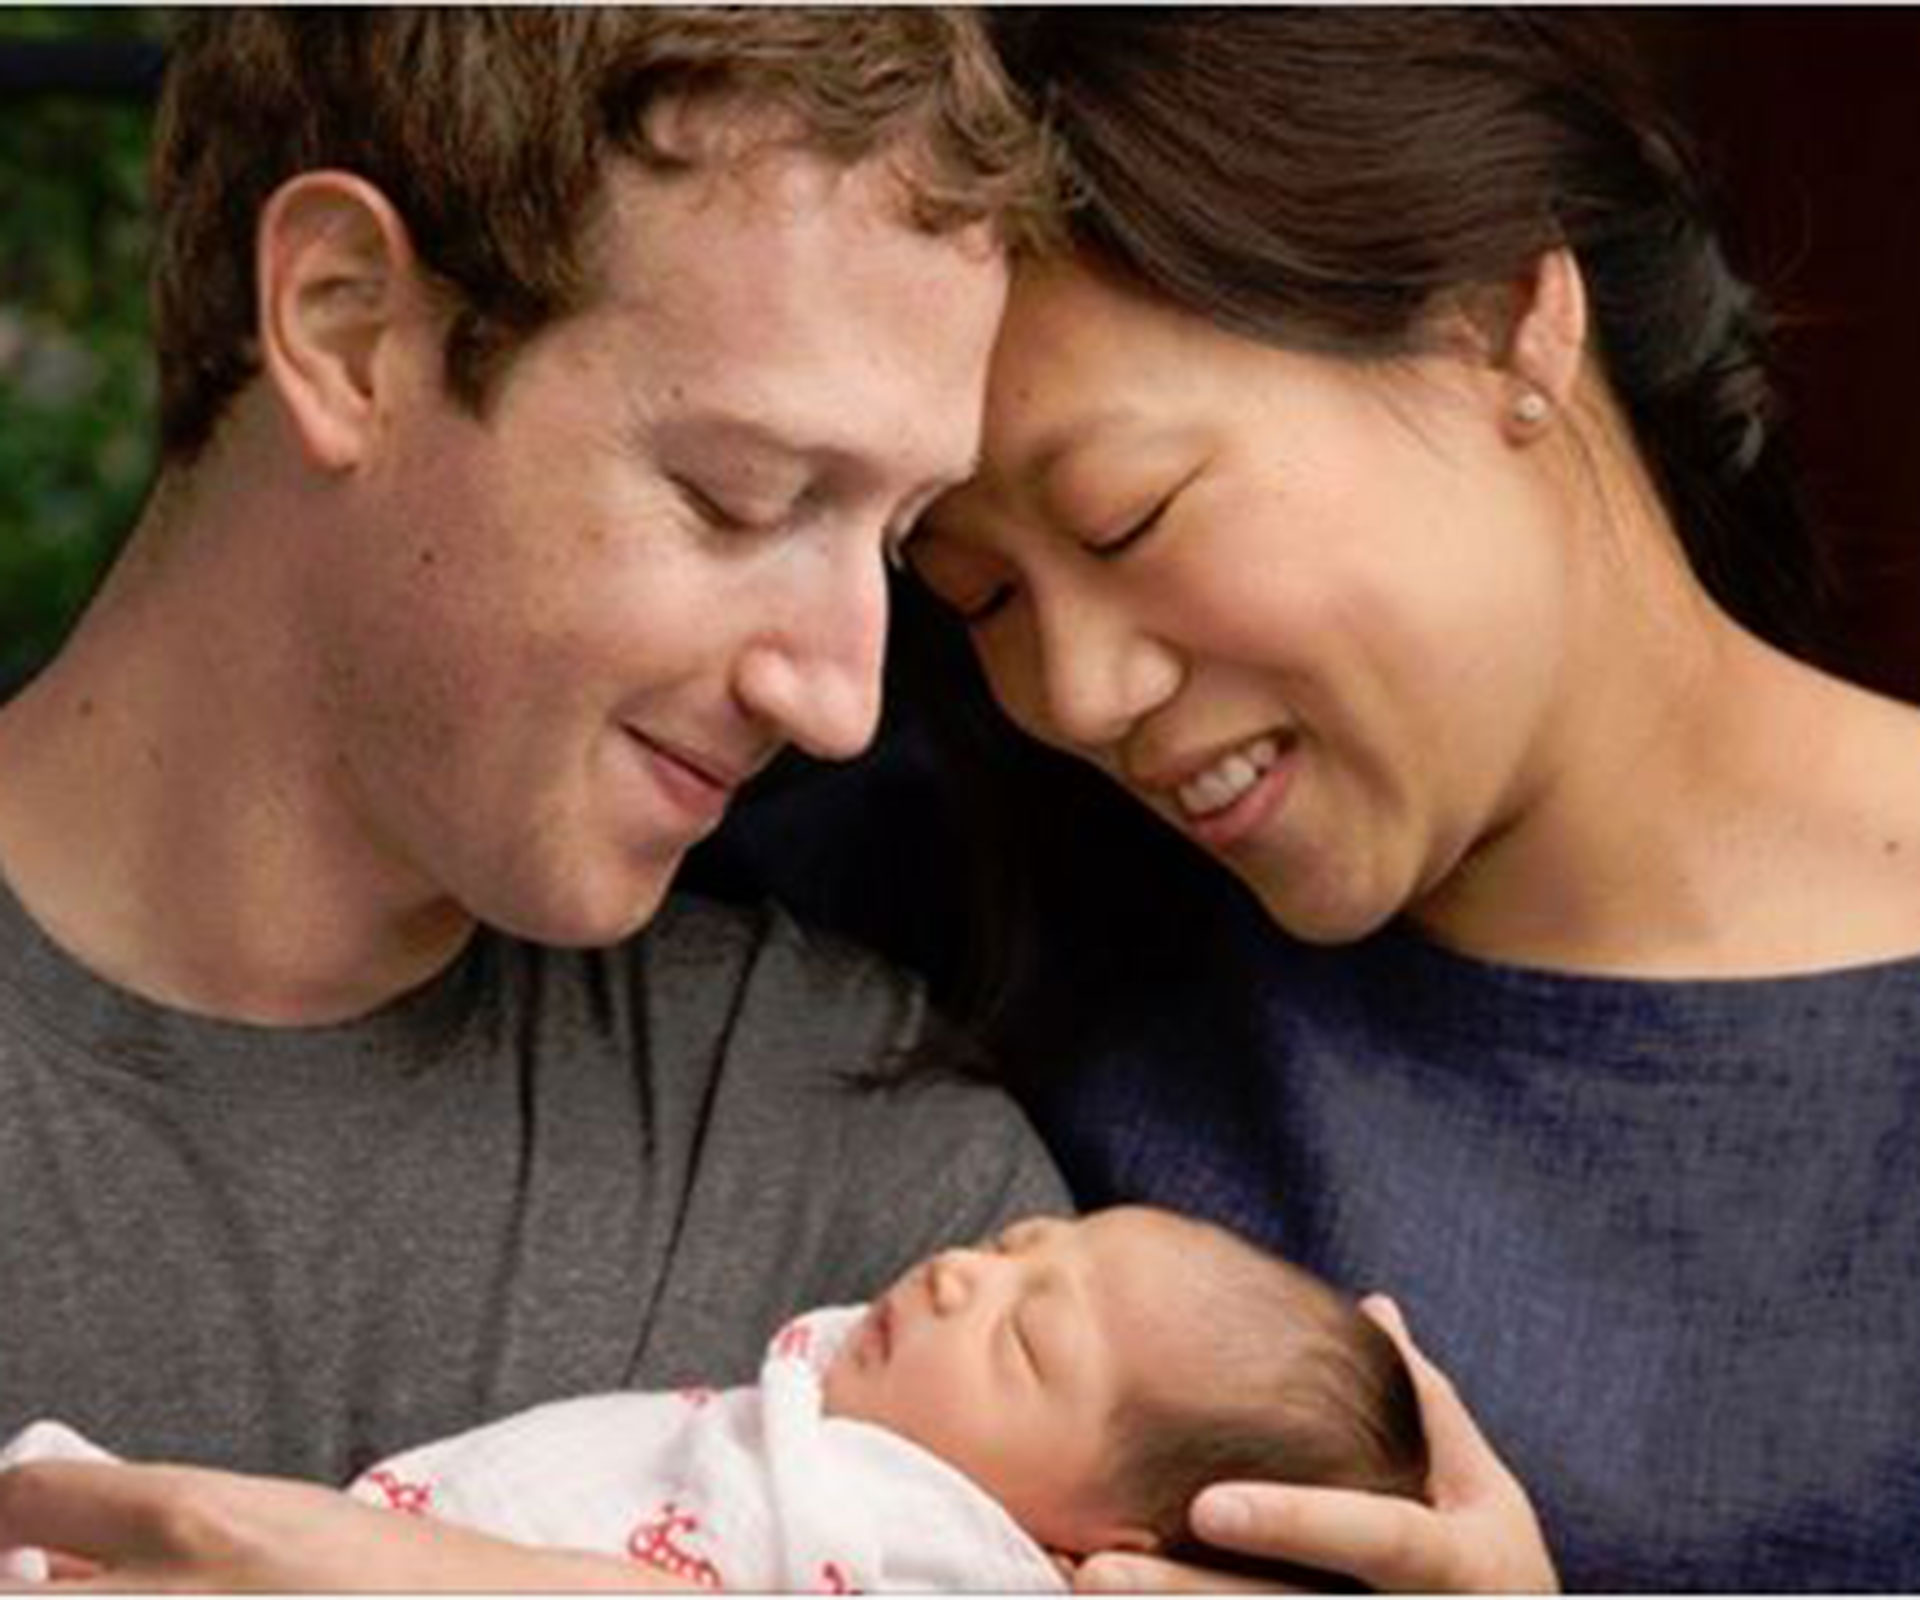 Mark Zuckerberg and Priscilla Chan 